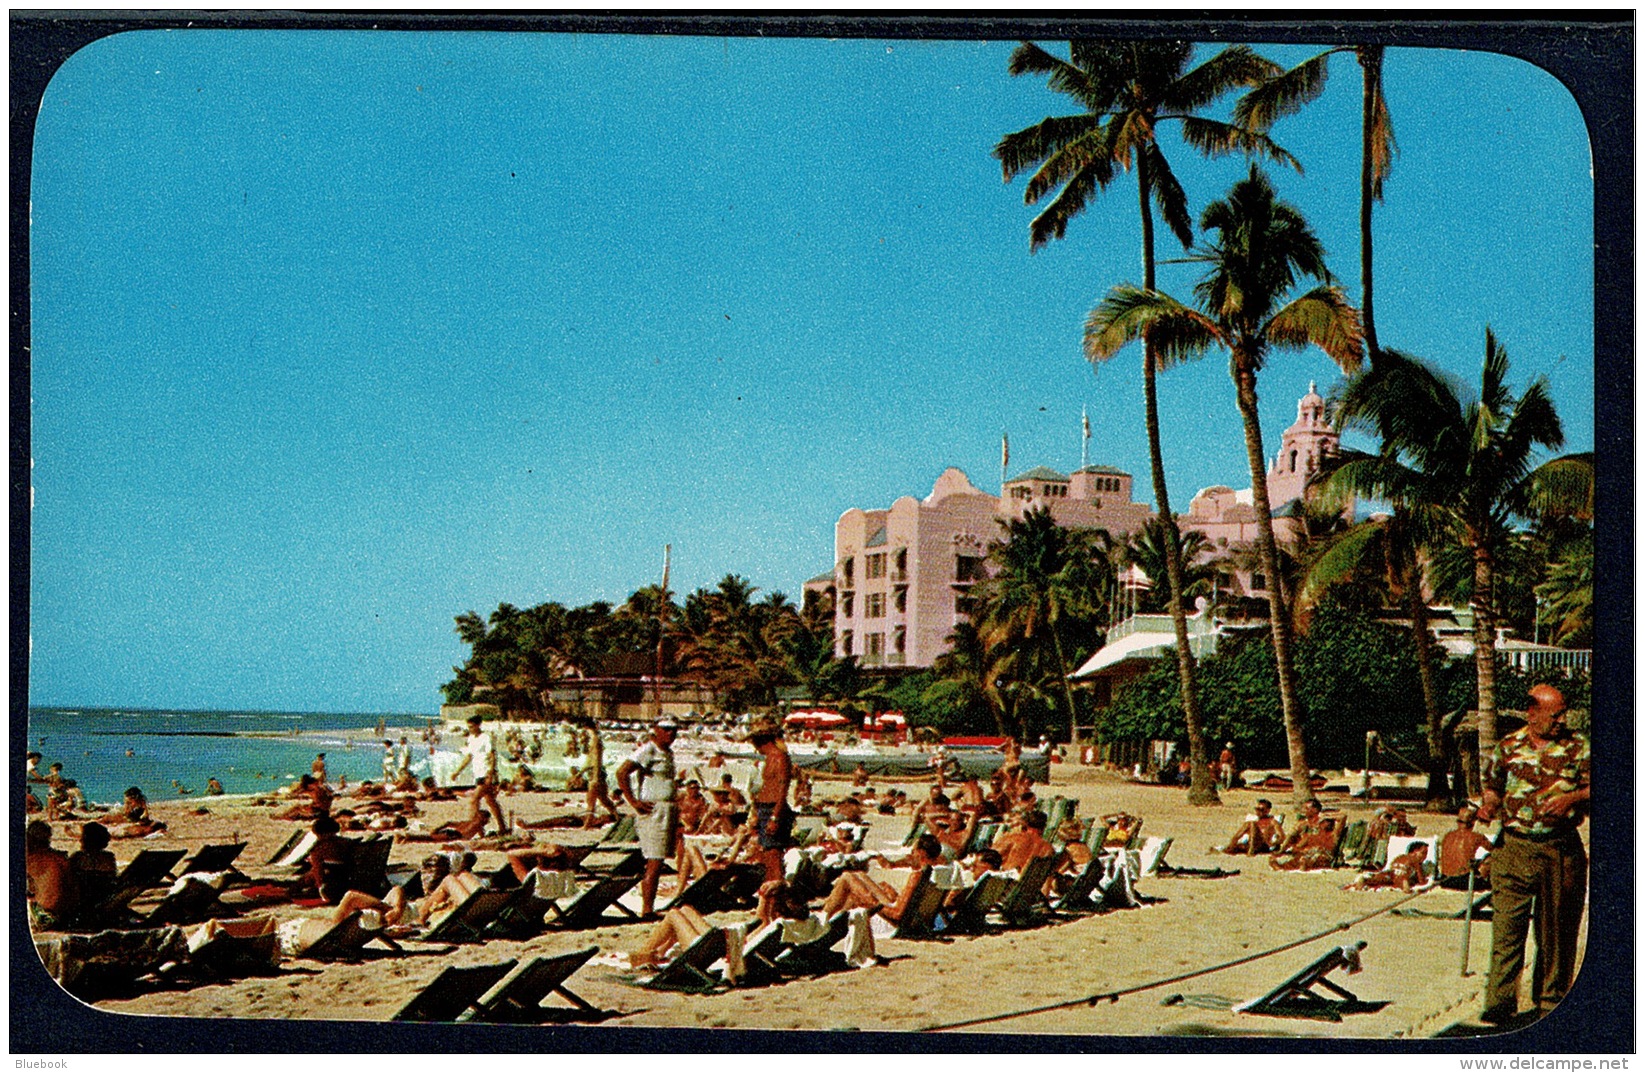 RB 1182 - 2 Postcards - Royal Hawaiian Hotel - Hawaii USA - Honolulu